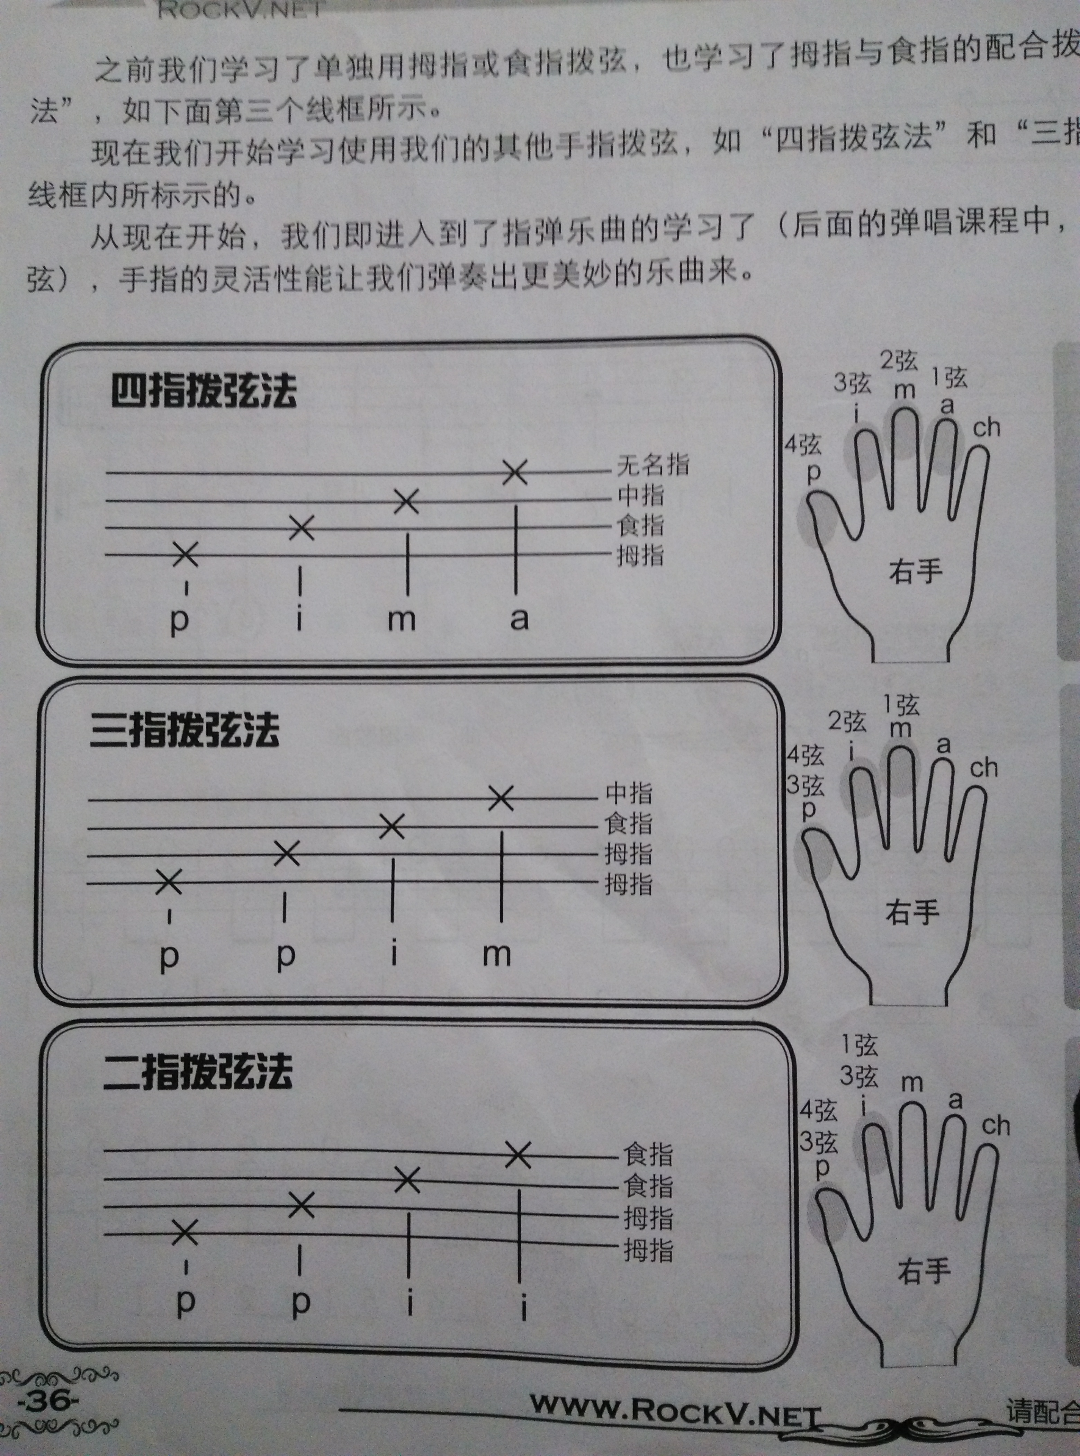 二胡的演奏方法六演奏姿势-乐器教程-二胡教程-音乐教程-音乐粉